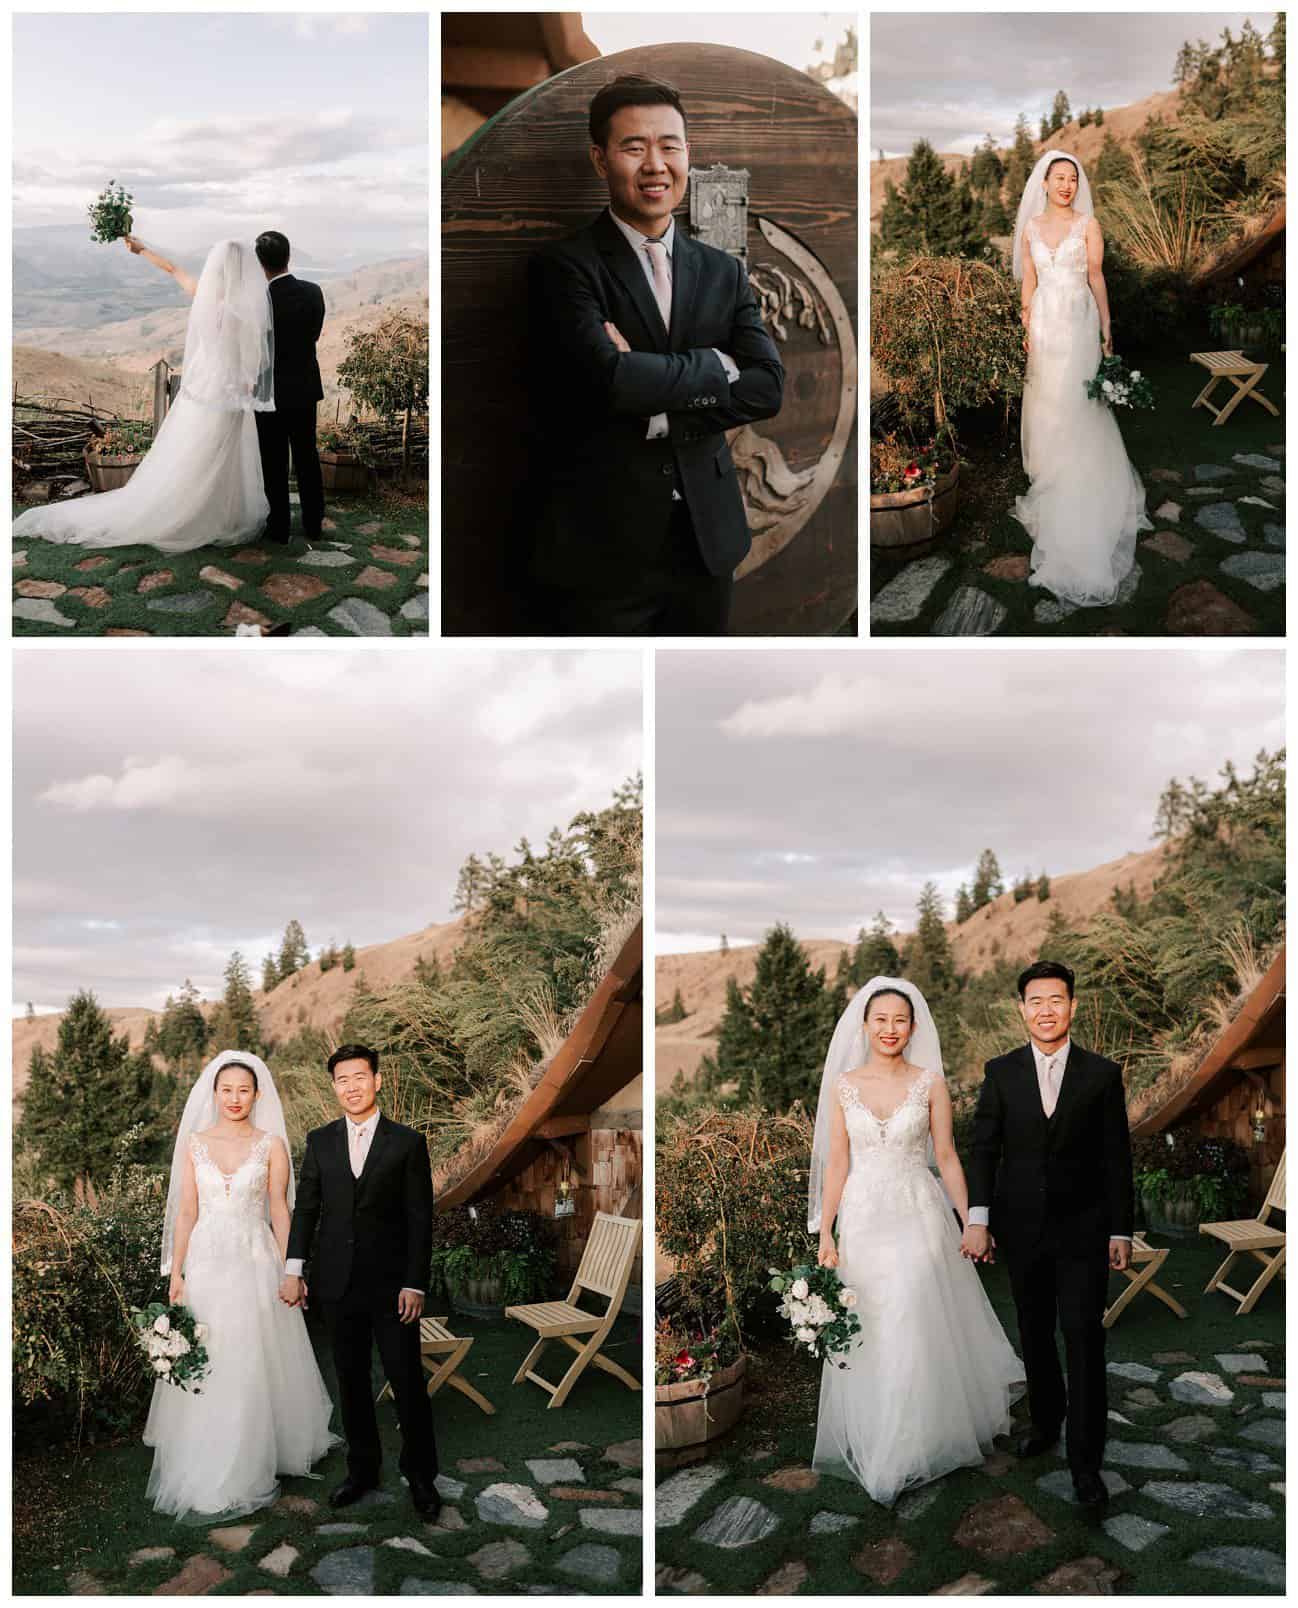 Hobbit House wedding photos in Lake Chelan, WA